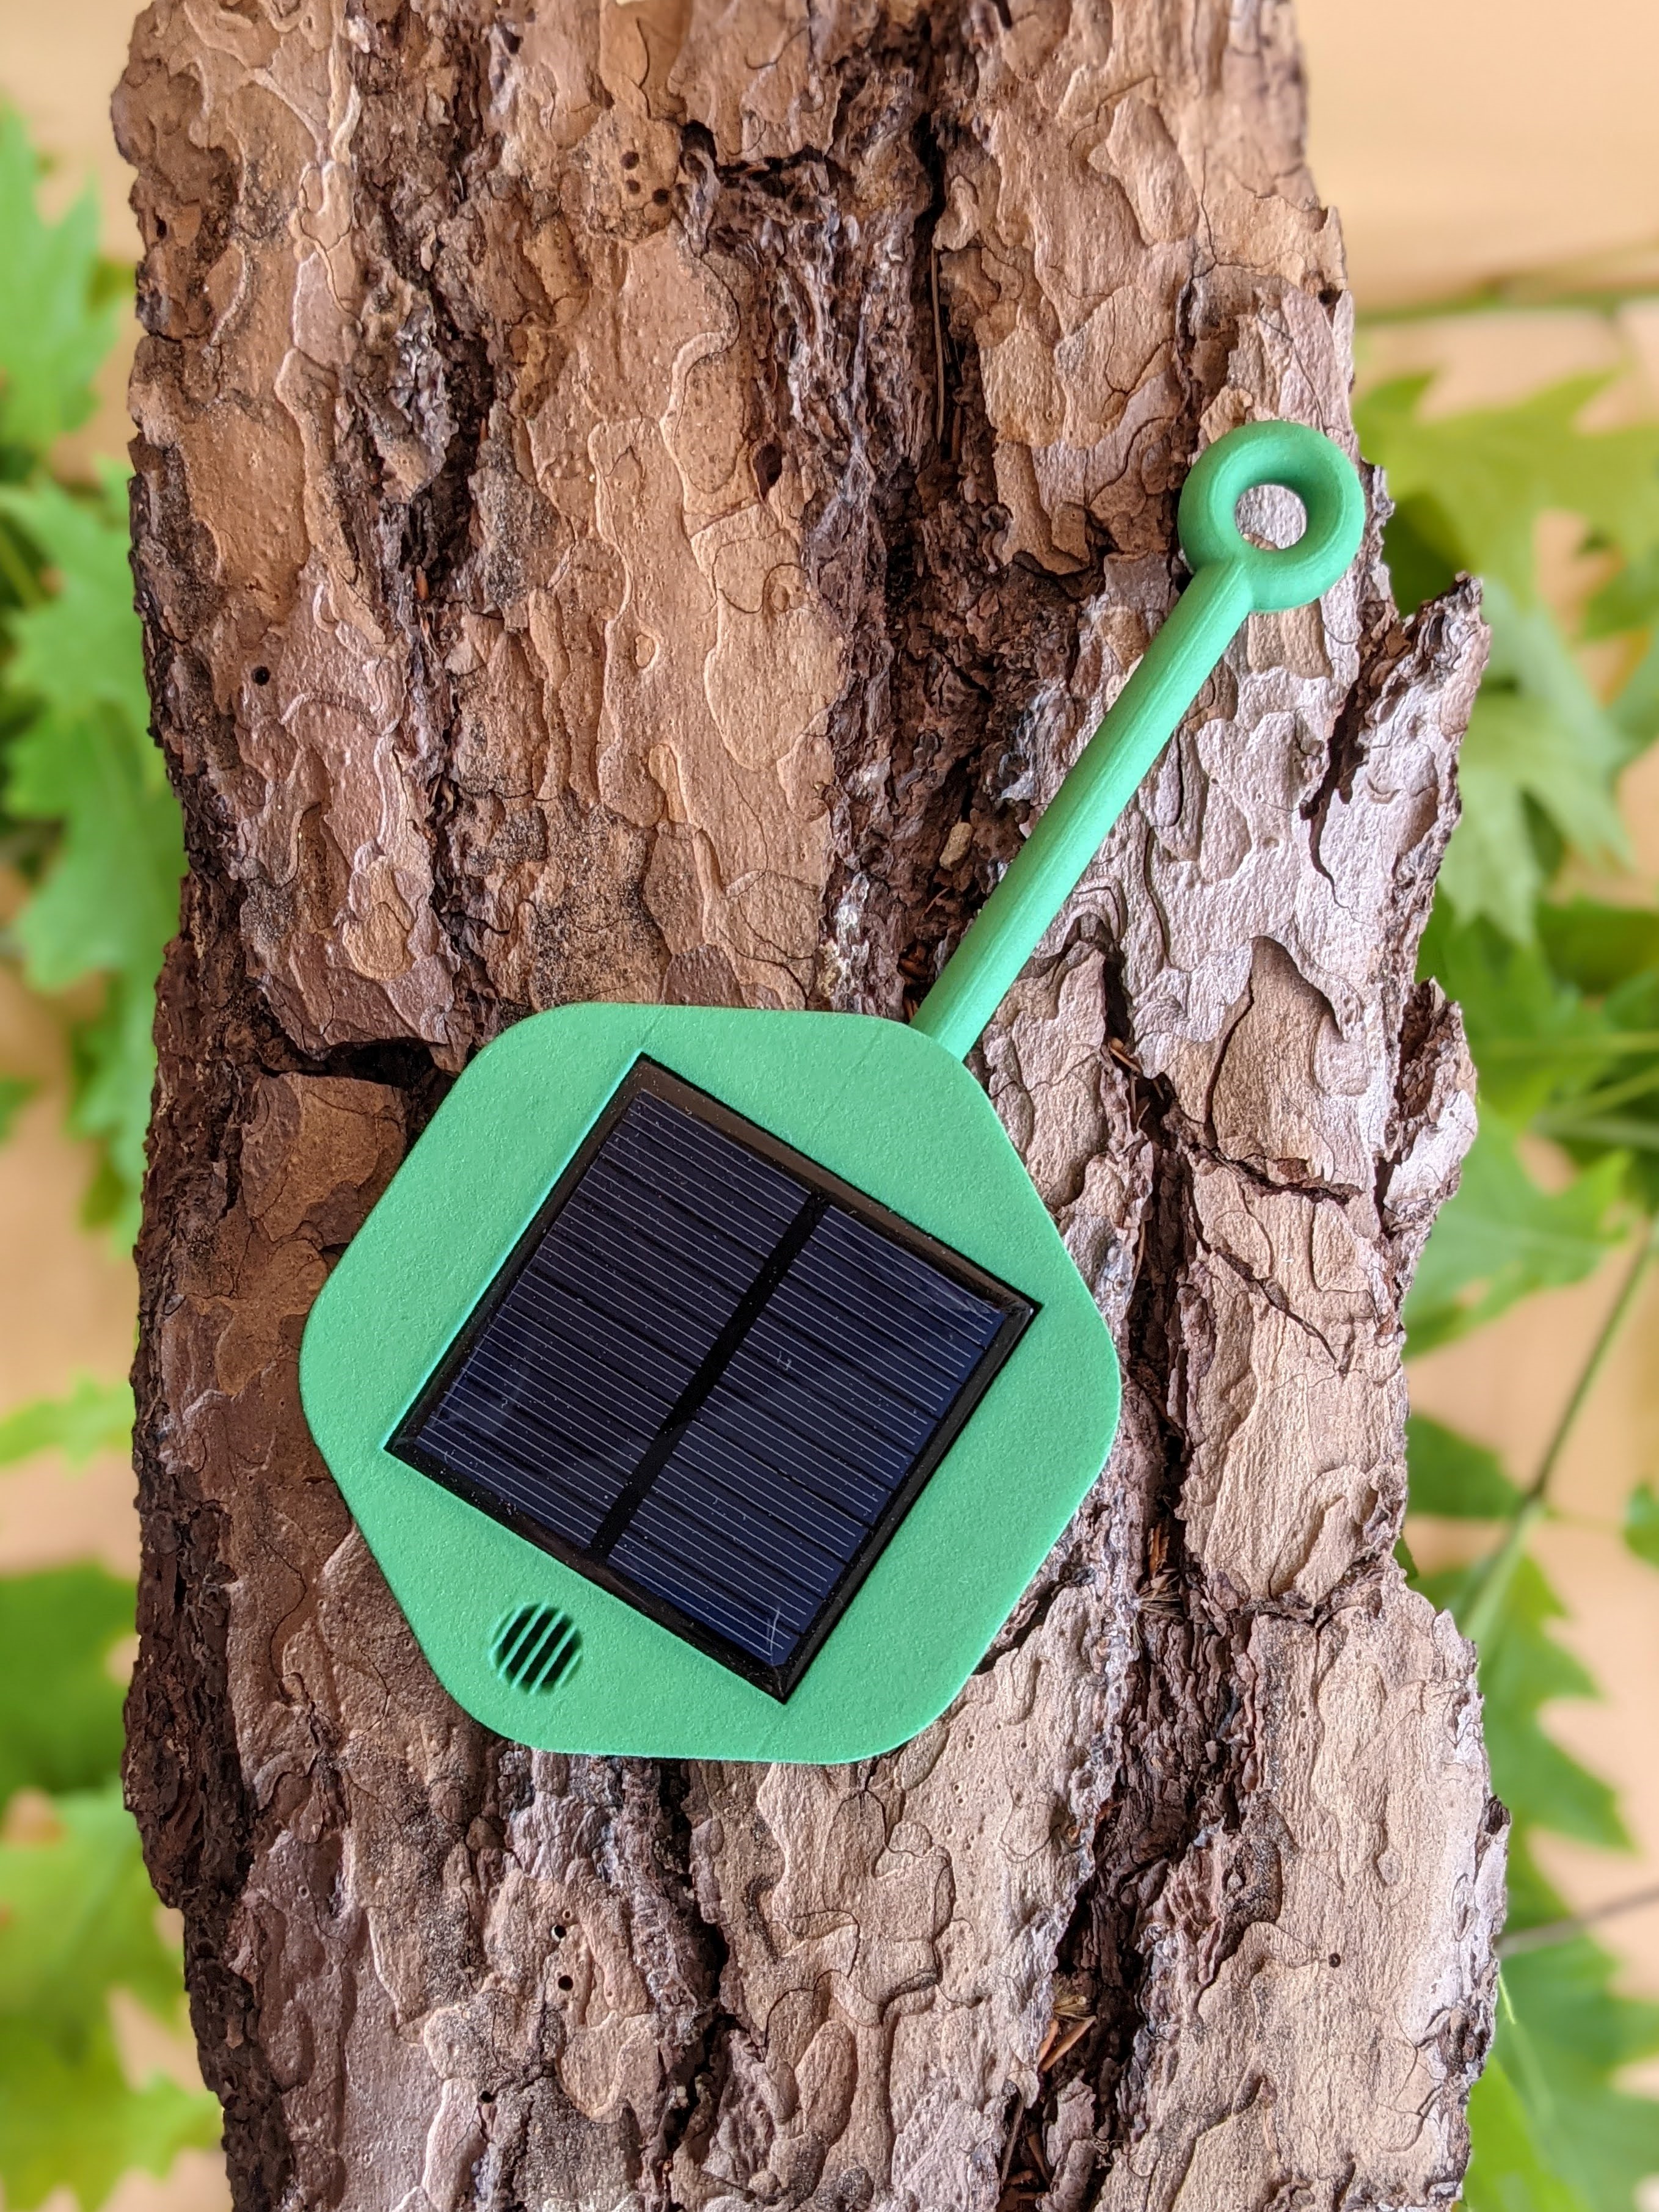 Ausschnitt eines Baumes mit einem Solarpanel